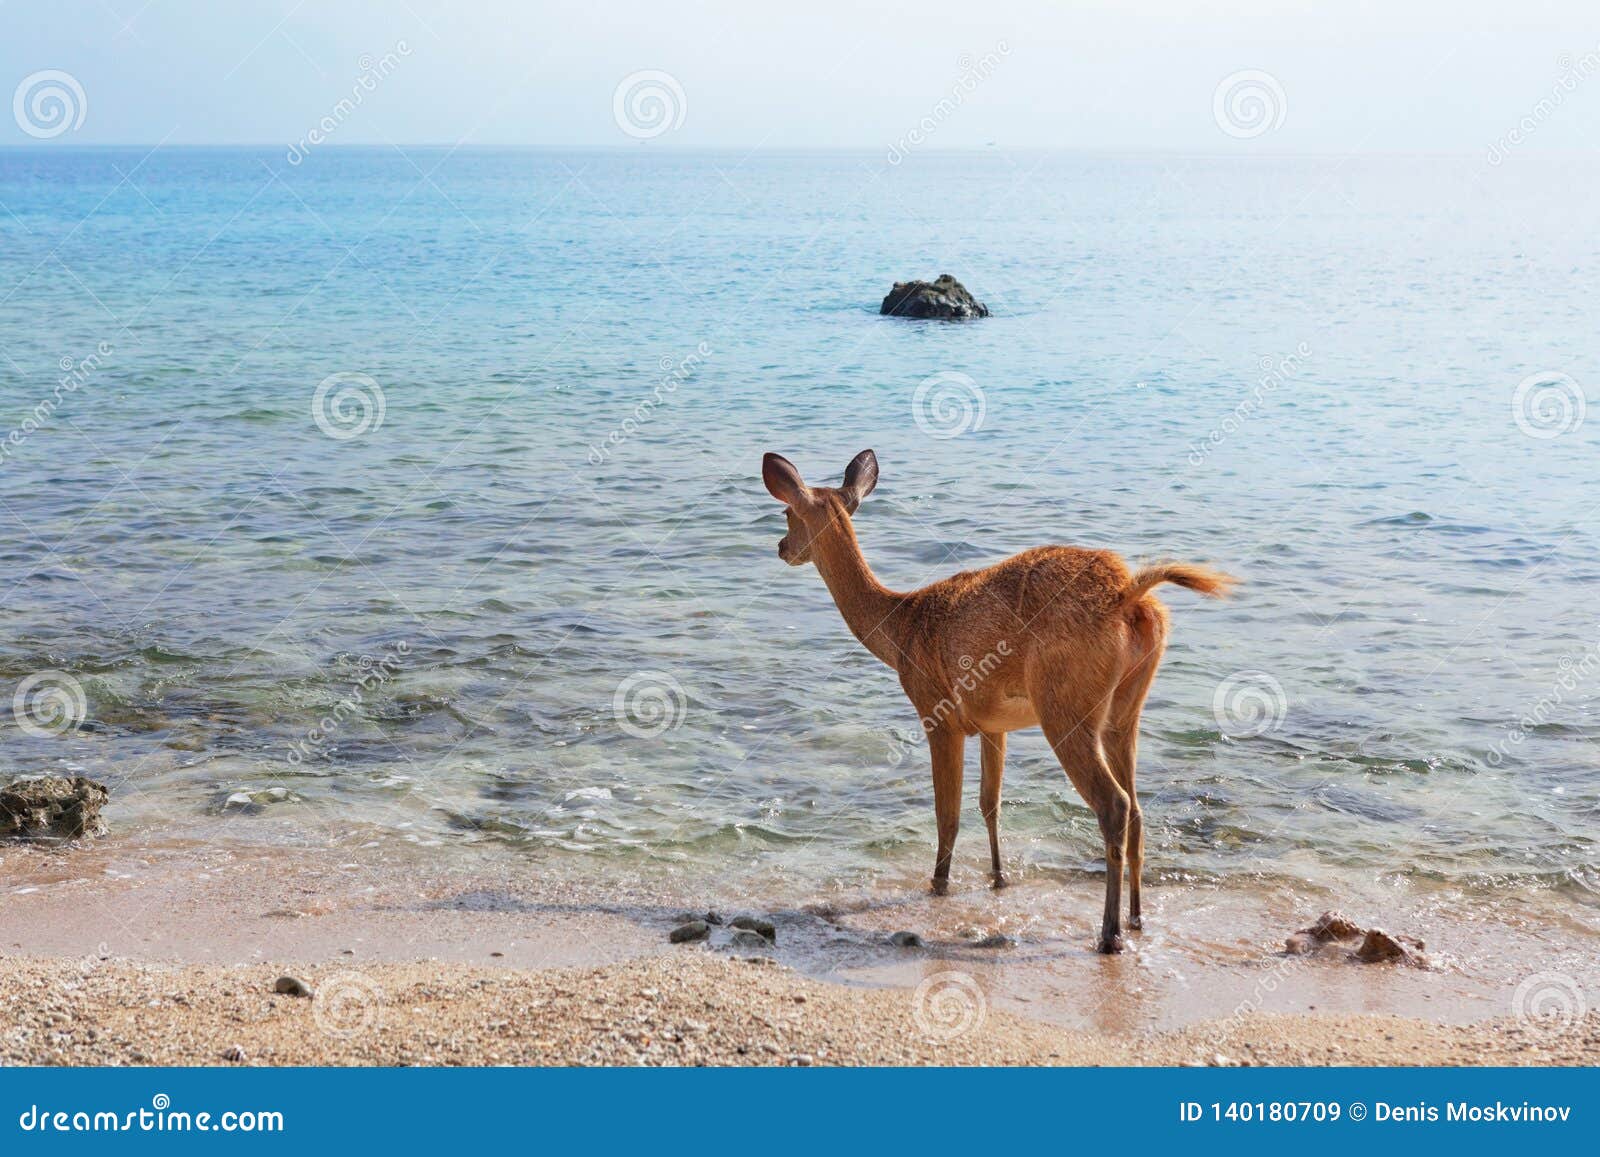 javan rusa deer on sea beach